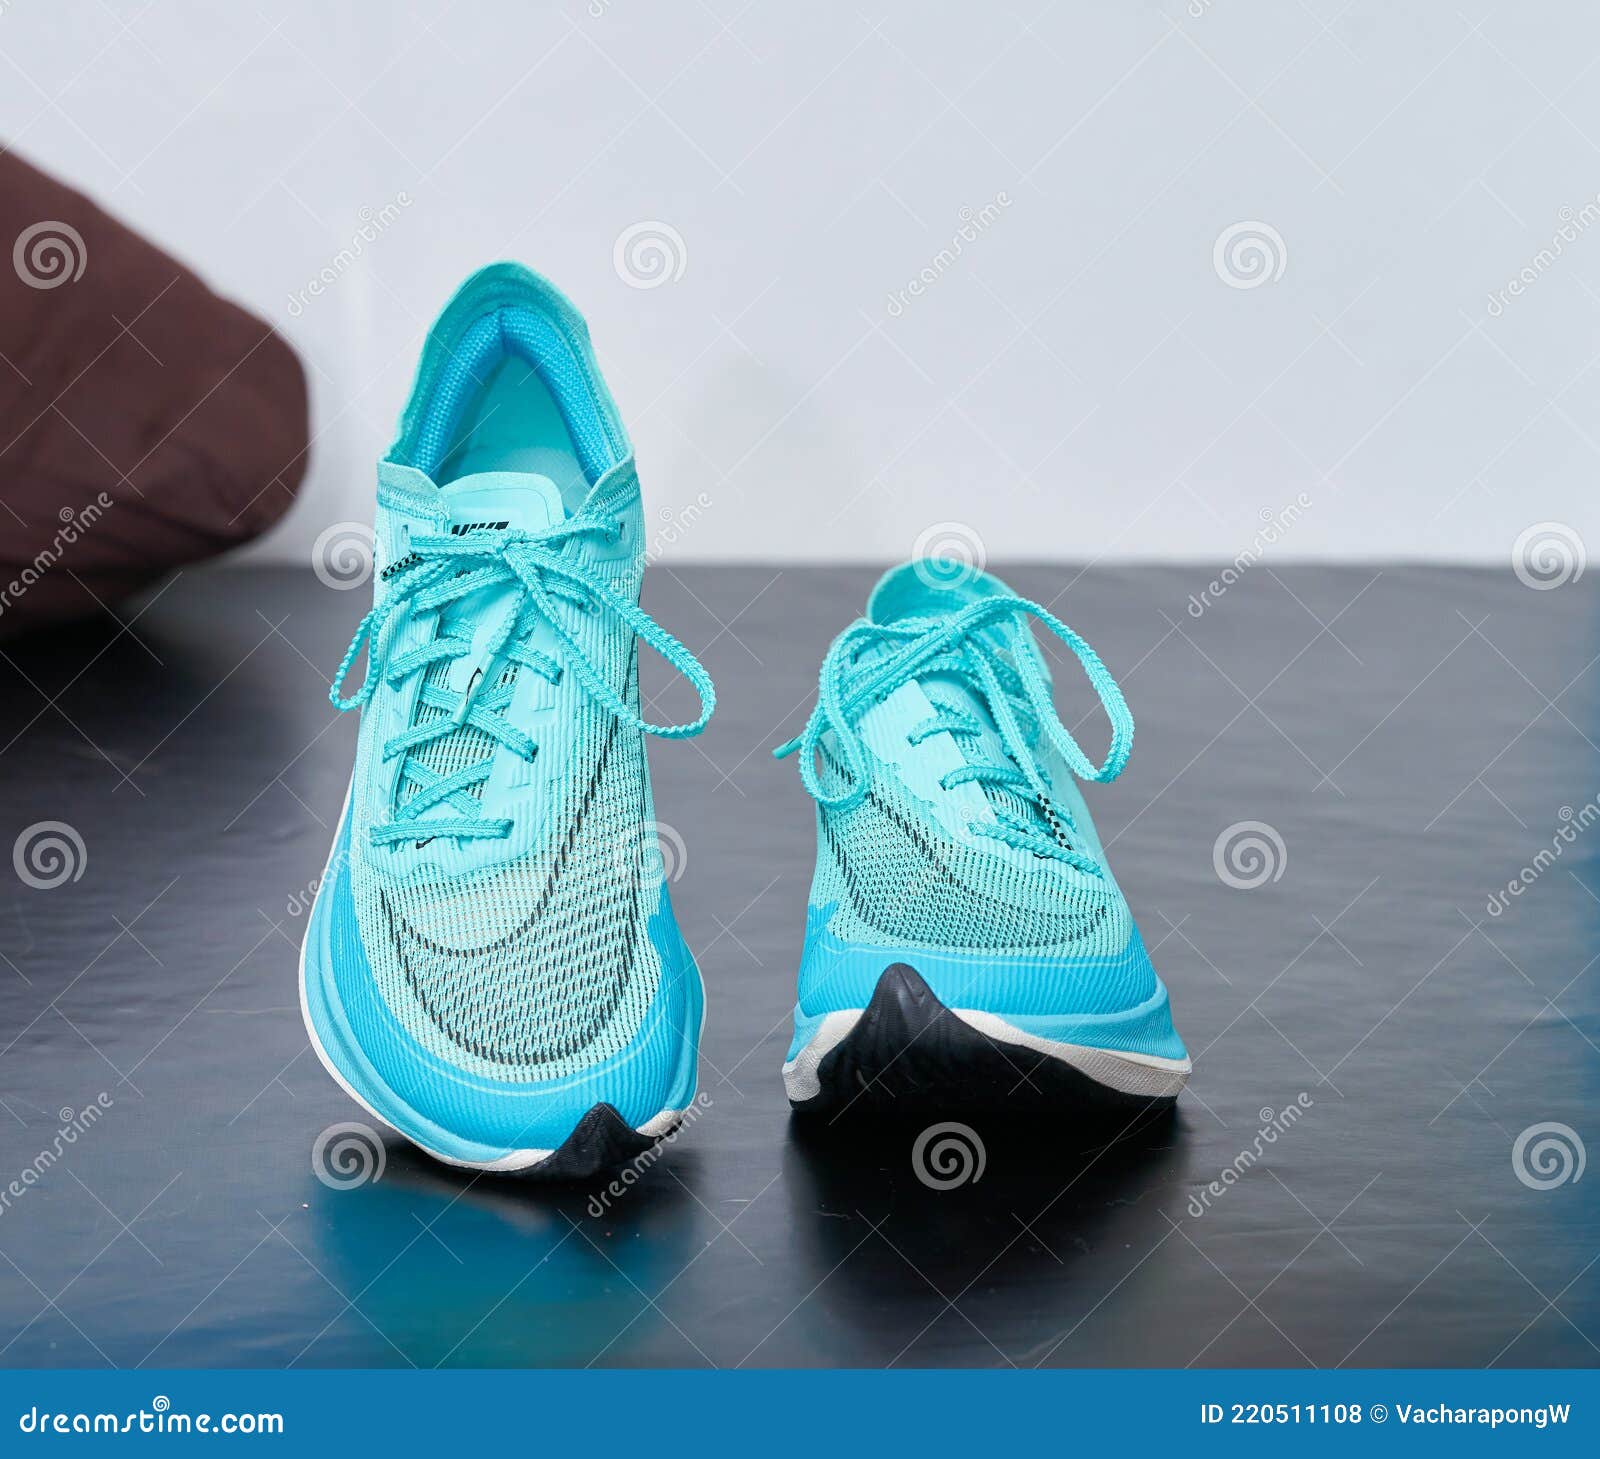 Bangkok Tailandia Feb 10 2021 Teal Nike Zapatillas Frontal Foto de archivo editorial Imagen de color, horizontal: 220511108